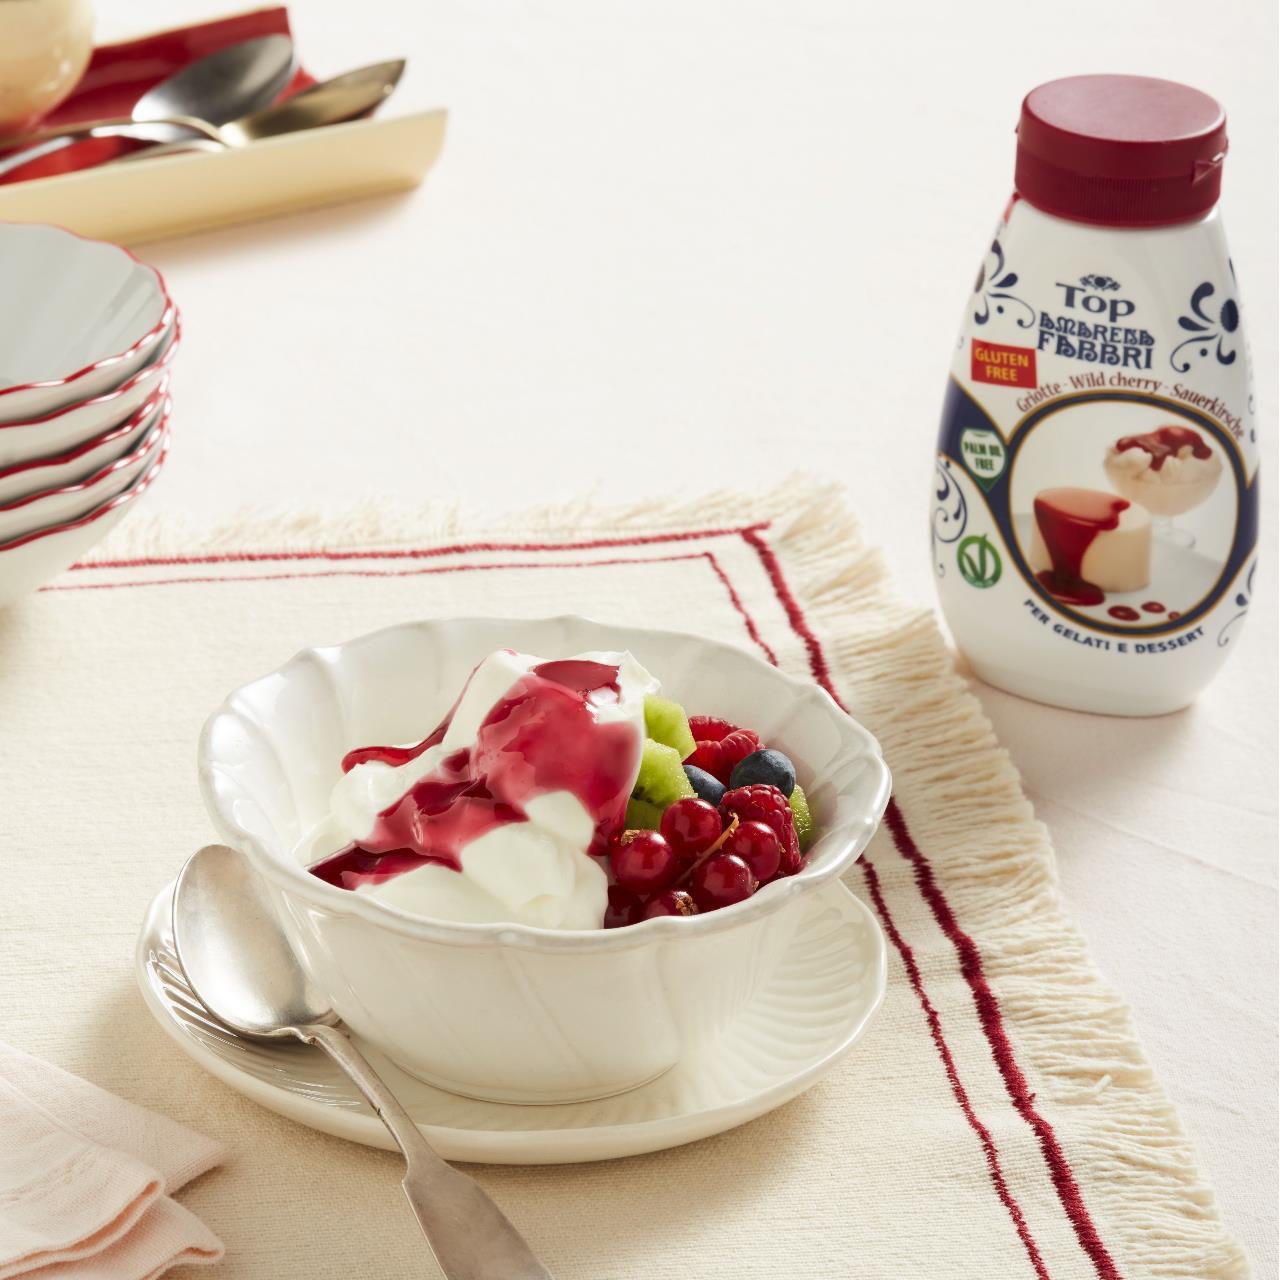 Coppa di yogurt con frutta fresca e topping Amarena Fabbri